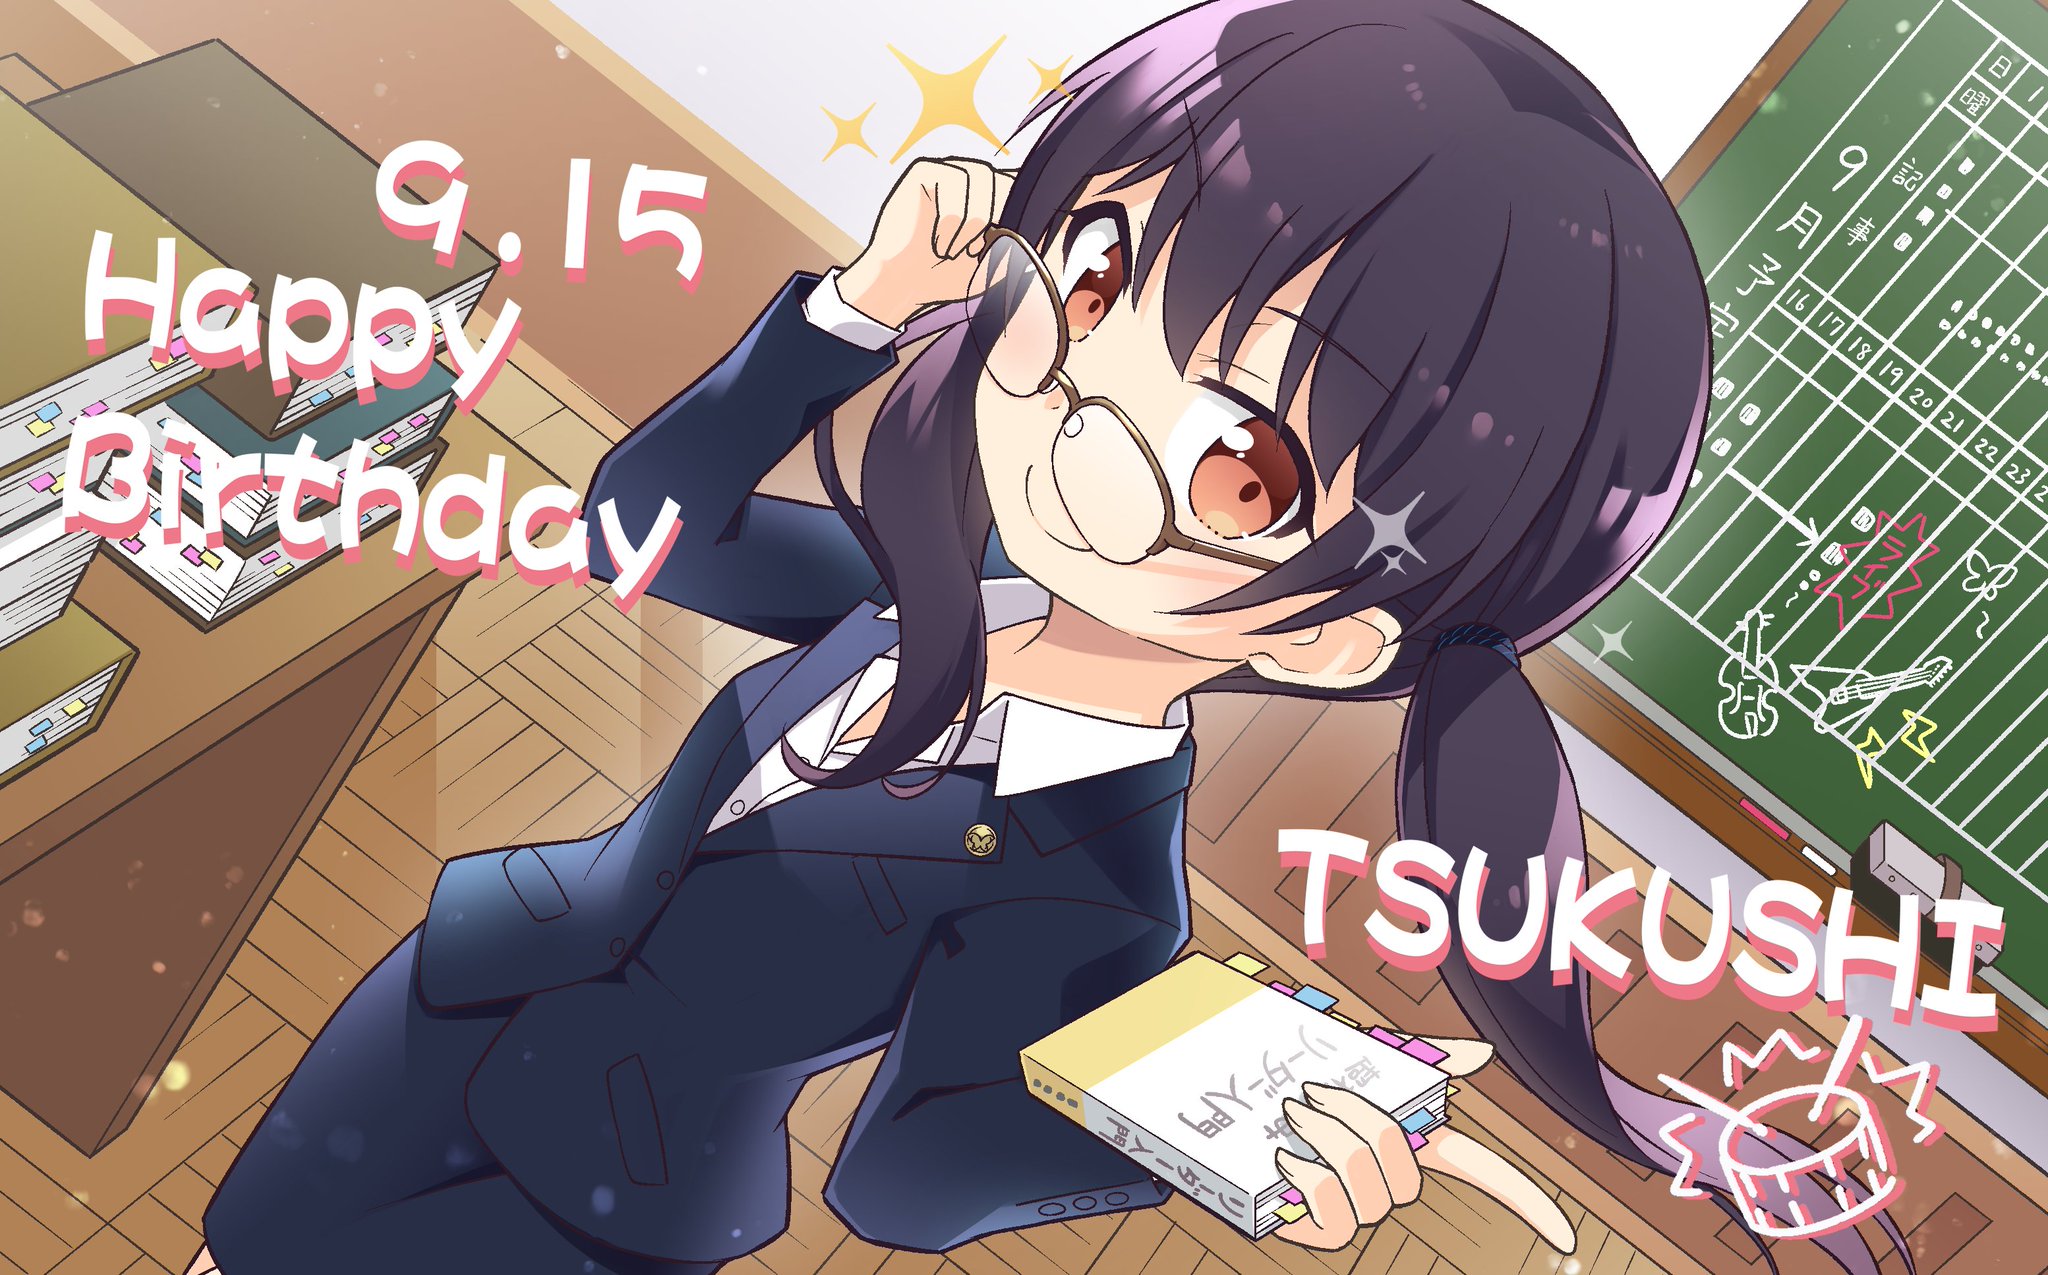 Happy Birthday 2020 - Tsukushi